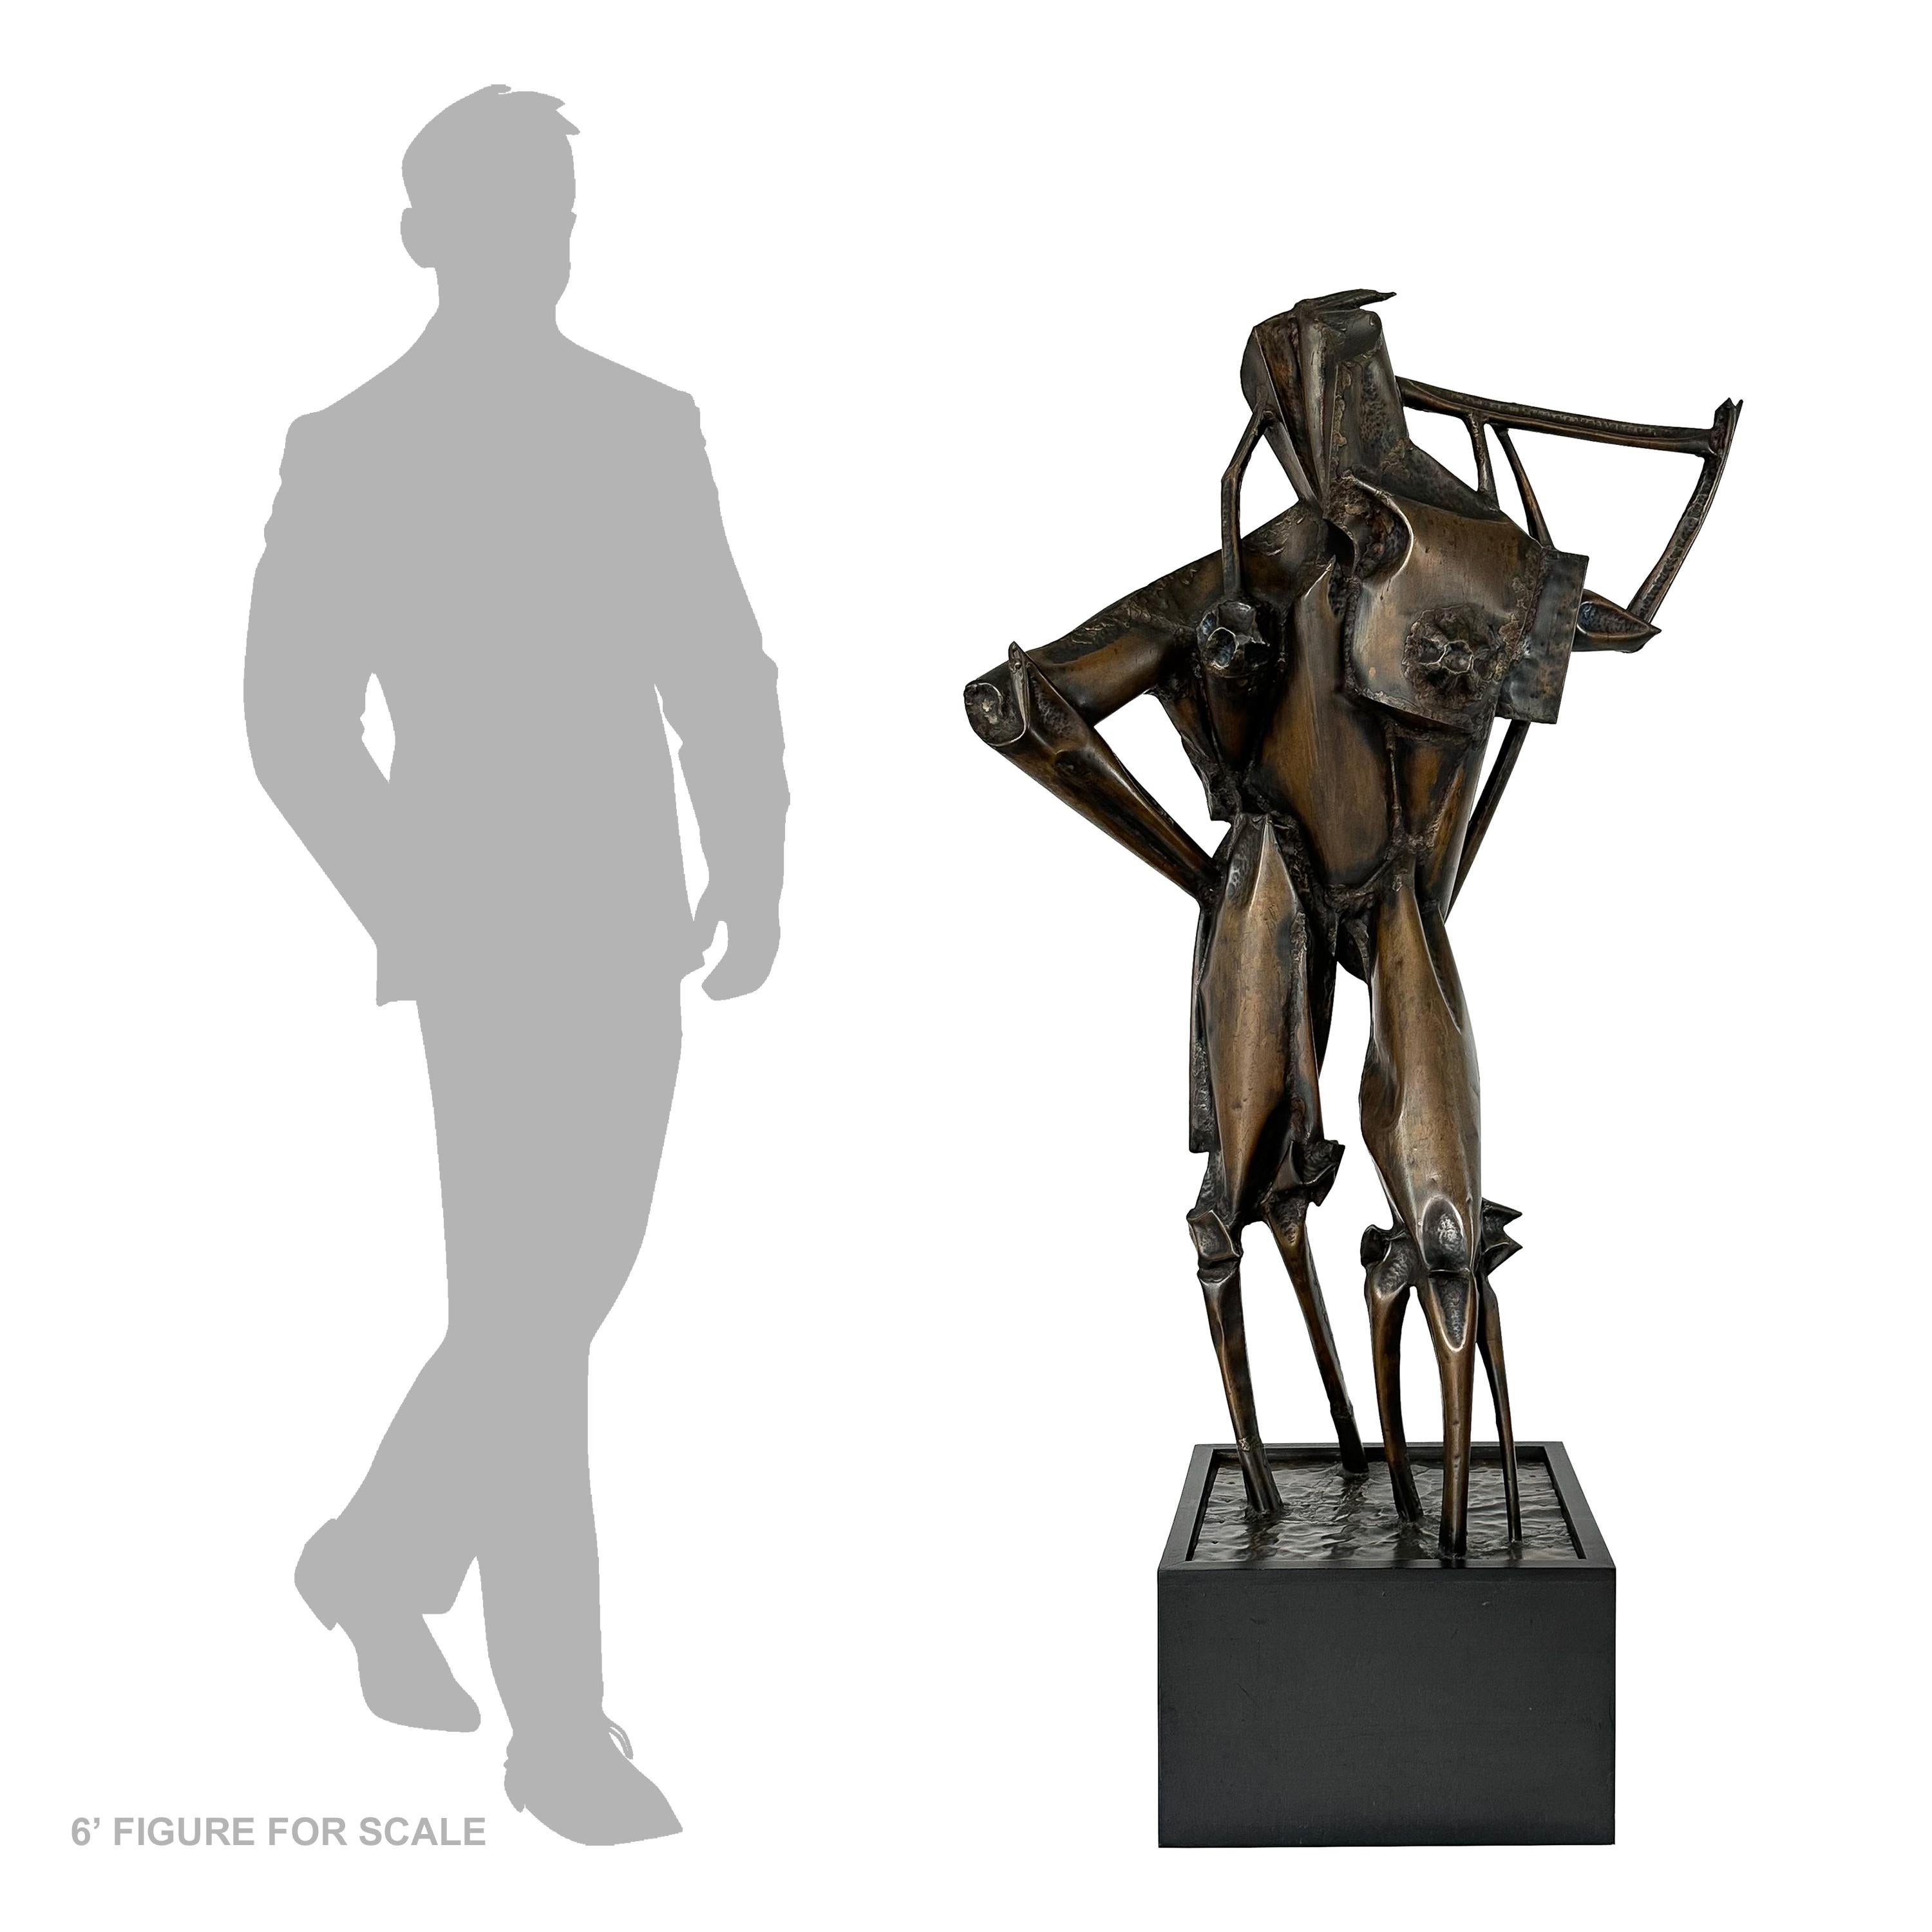 Diese monumentale abstrakte Bronzeskulptur von Clyde Ball (1929-2017) ist eine tiefgründige Erforschung von Form und Konzept und ist beeindruckende 63 cm hoch. Das in den 1970er Jahren entstandene Werk weist die rohe, ungeschliffene Energie des